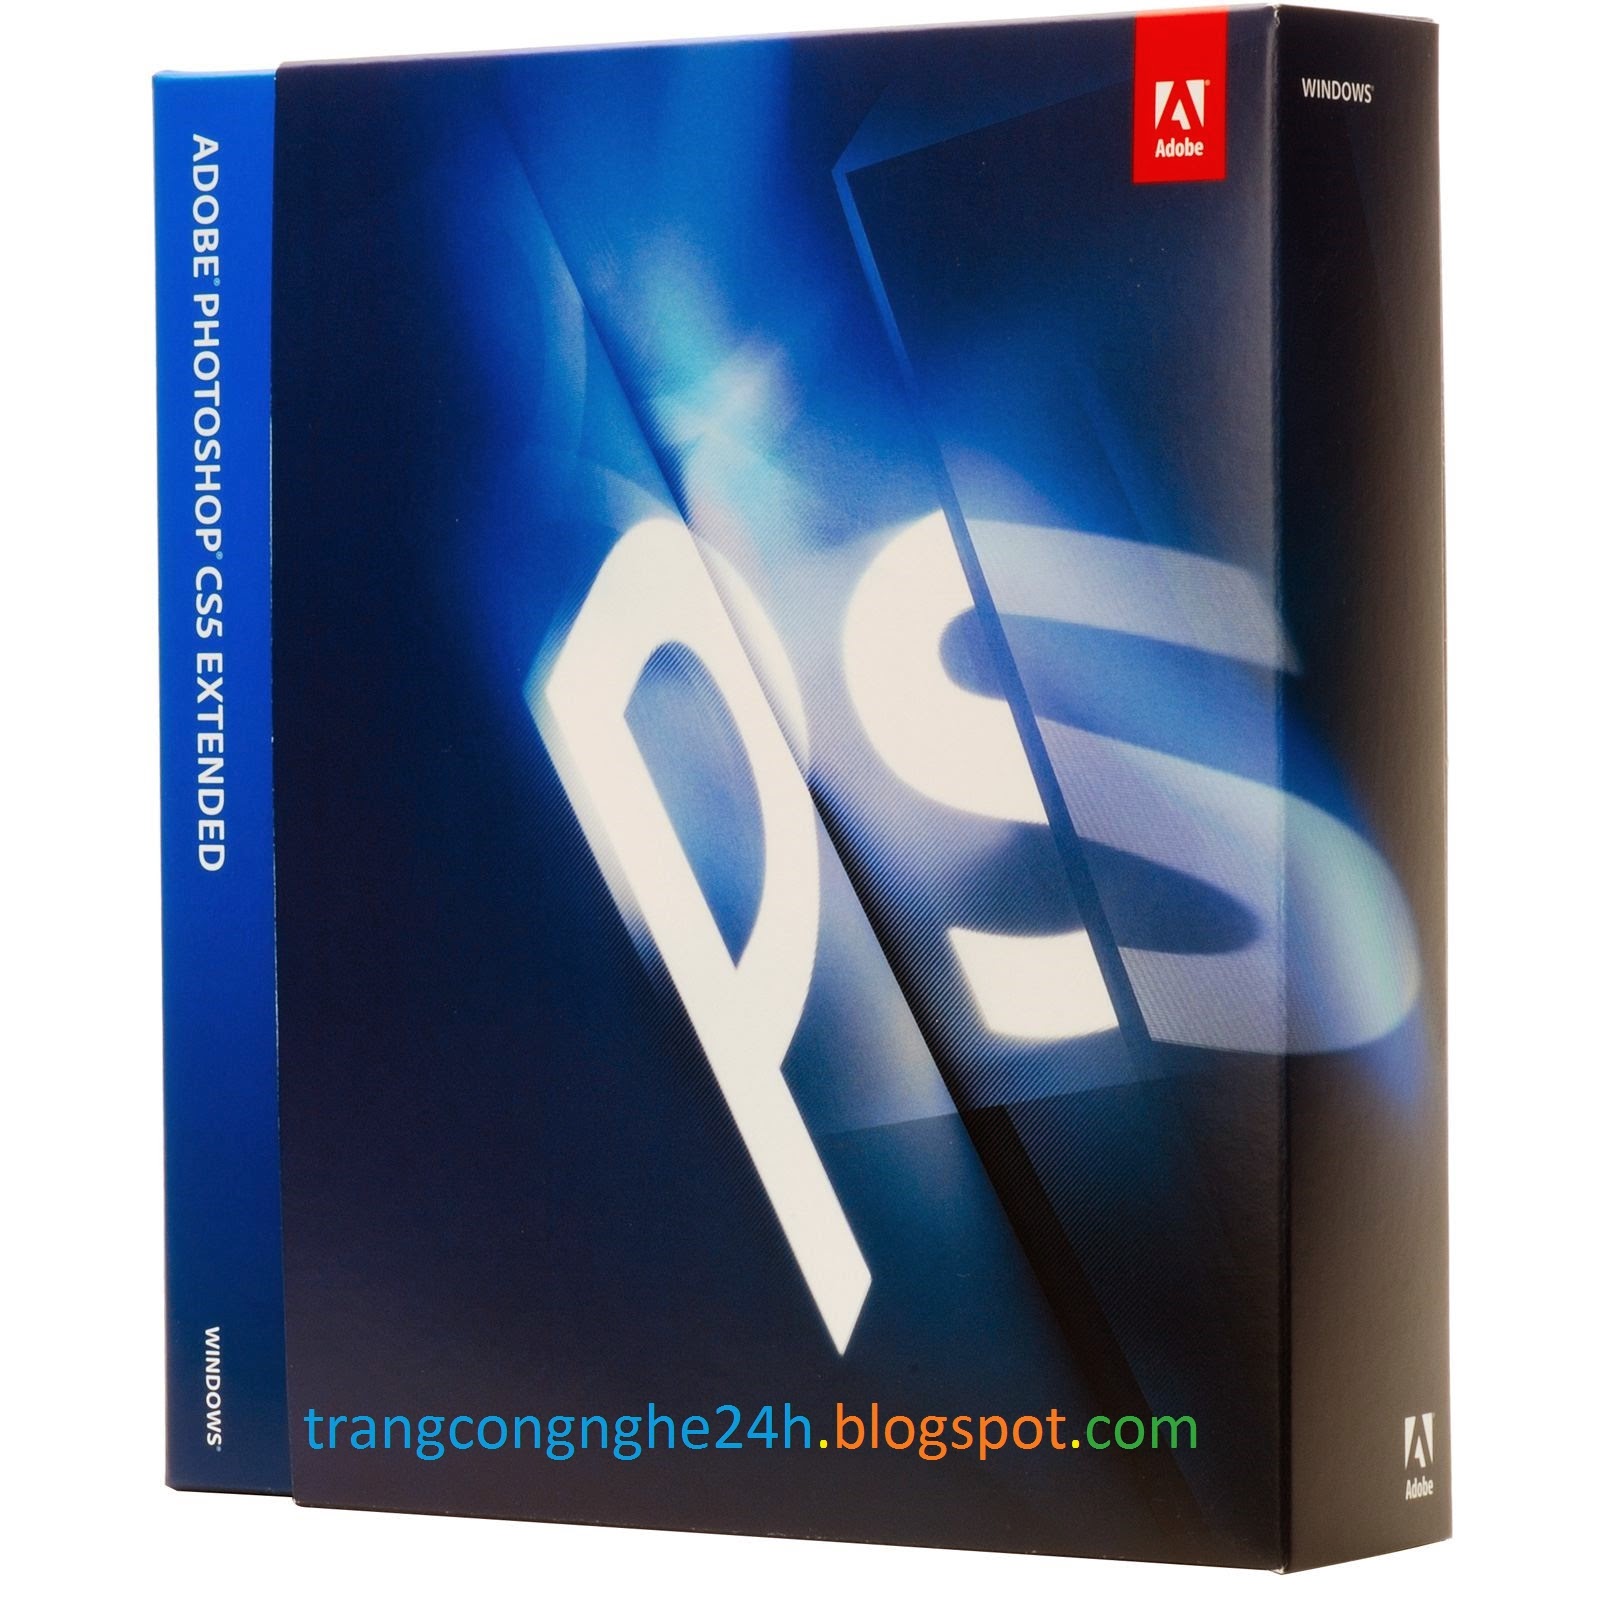 Download Bộ Ebook Hướng Dẫn Sự Dụng Photoshop CS5 Extended  từ A đến Z